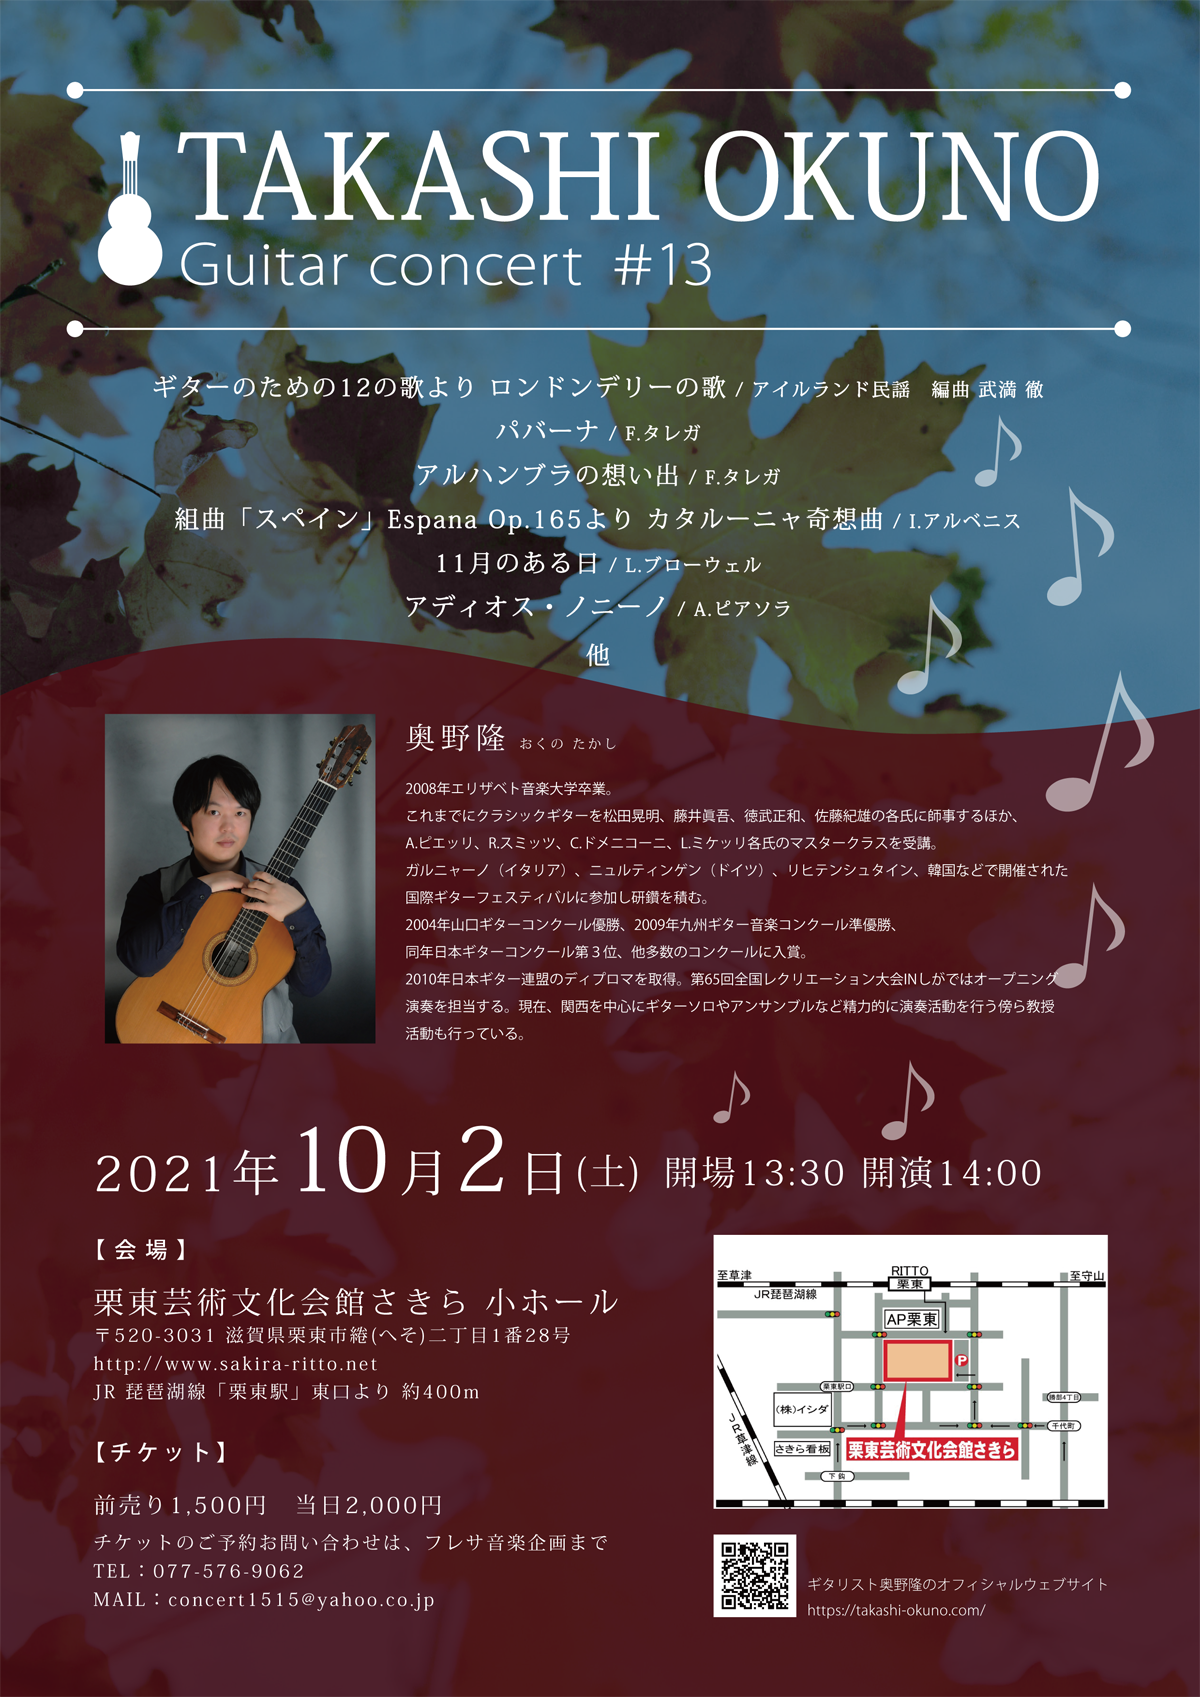 奥野隆コンサート情報 TAKASHI OKUNO Guitar concert #13